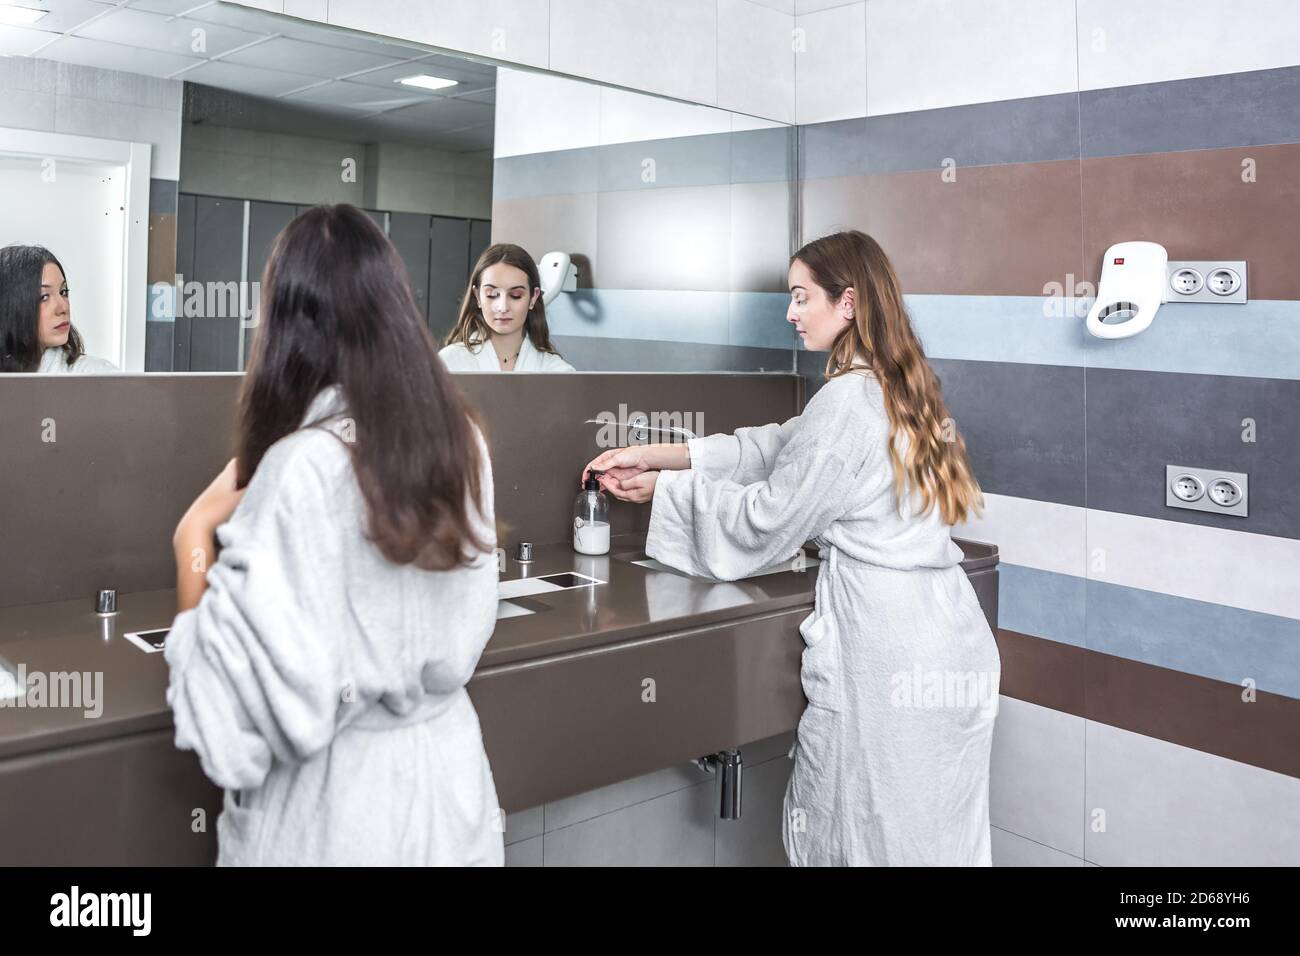 Rückansicht der jungen Frau im Bademantel, die die Hände waschen Waschbecken in der Nähe Freundin Kämmen Haare im Badezimmer des modernen Spa Salon Stockfoto